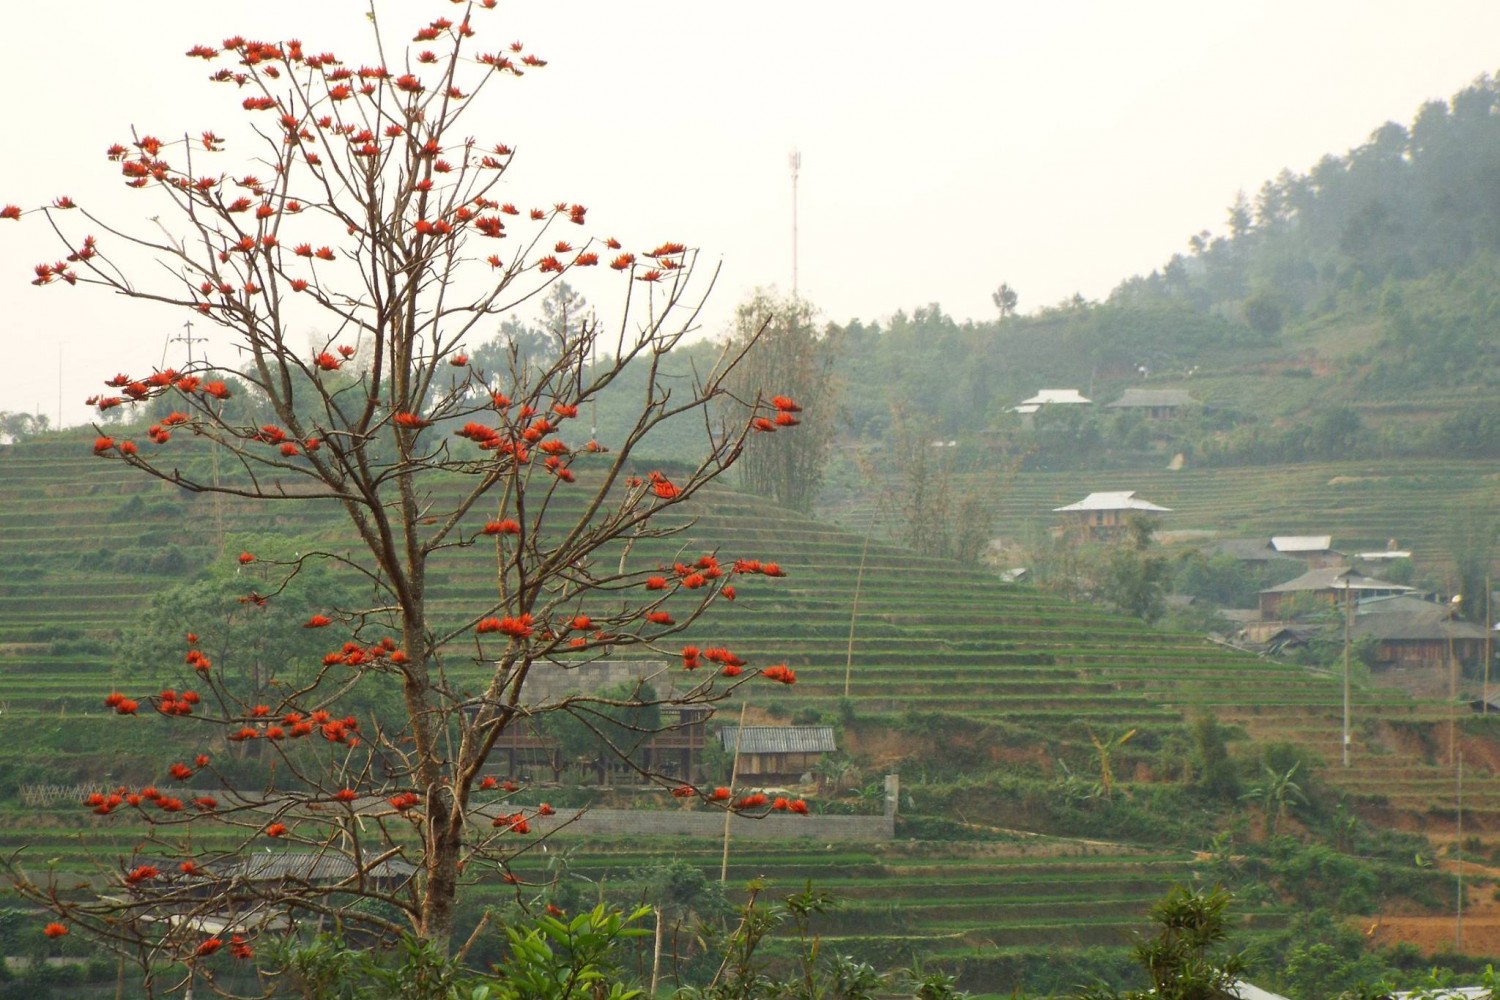 Enjoy red silk cotton trees in full bloom in Northwest Vietnam